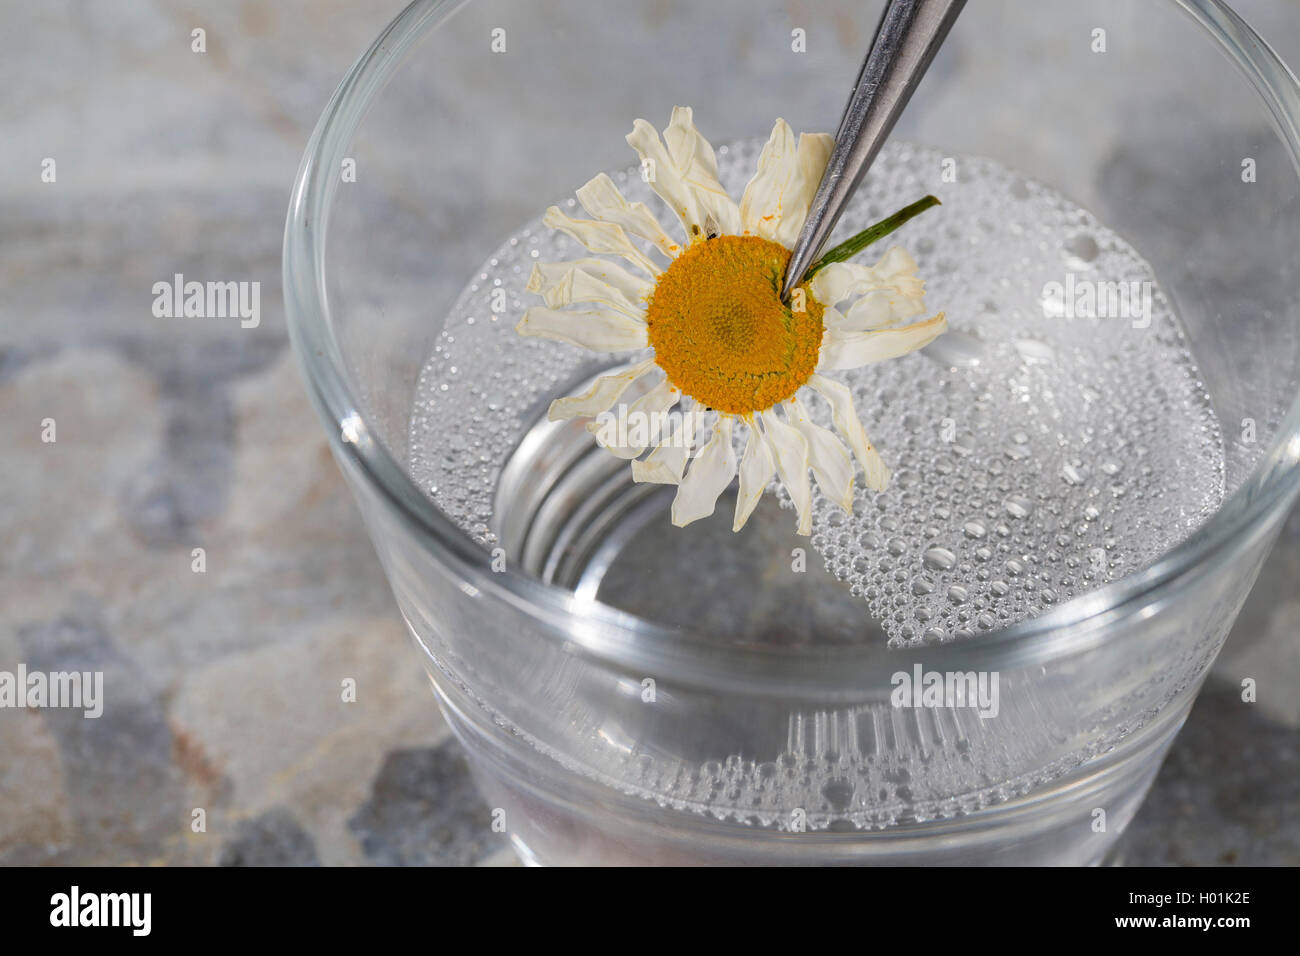 Pianta essiccata viene immersa in acqua saponata per una migliore preparazione, Germania Foto Stock